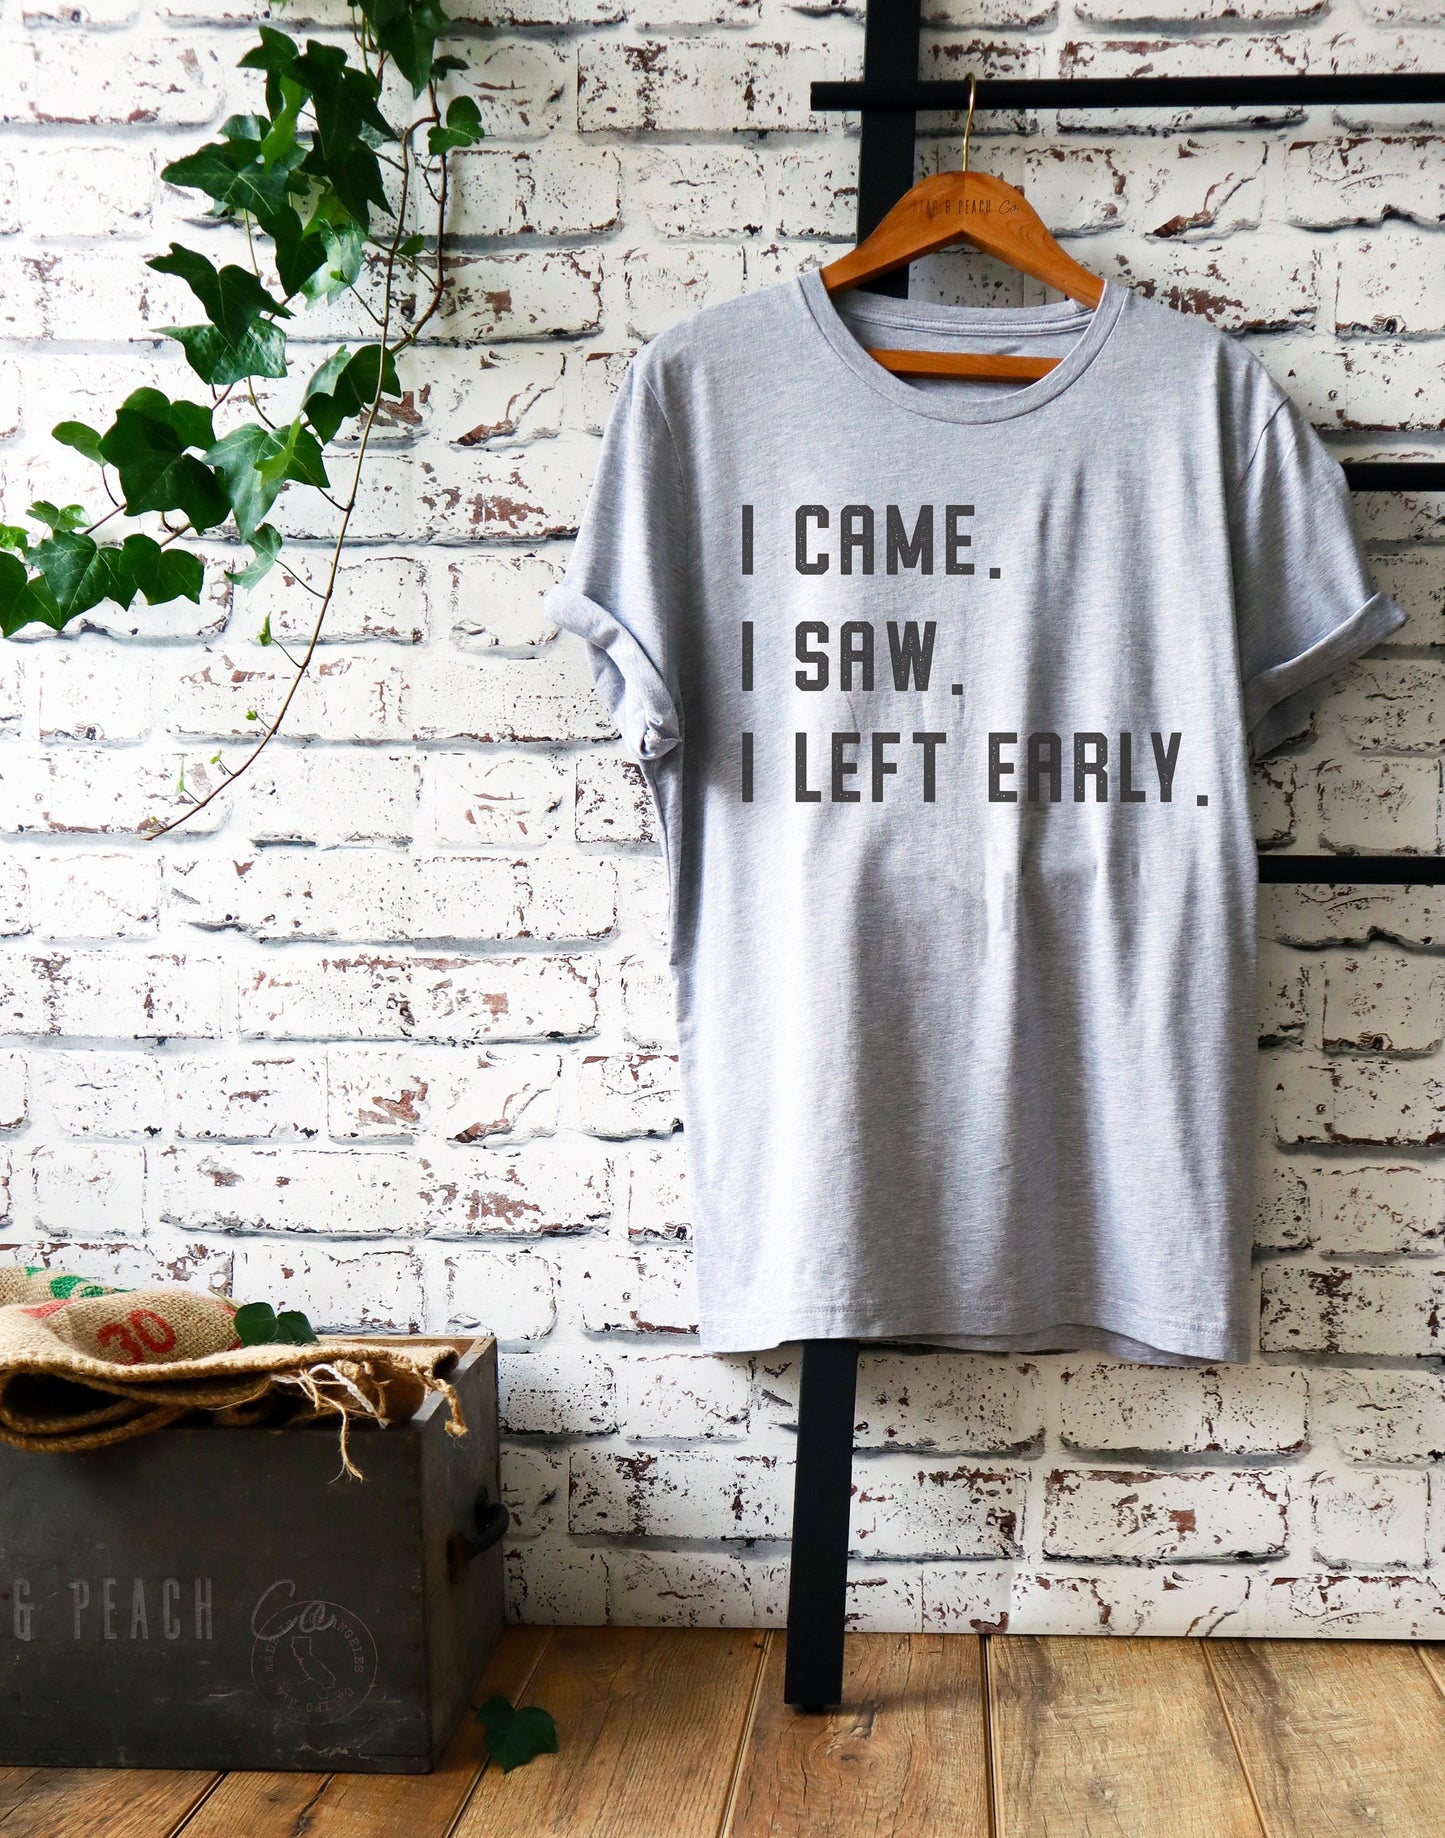 I Came I Saw I Left Early Unisex Shirt - Introvert Shirt, Introvert Gift, Introverts Unite, Antisocial Shirt, Socially Awkward, Introverting